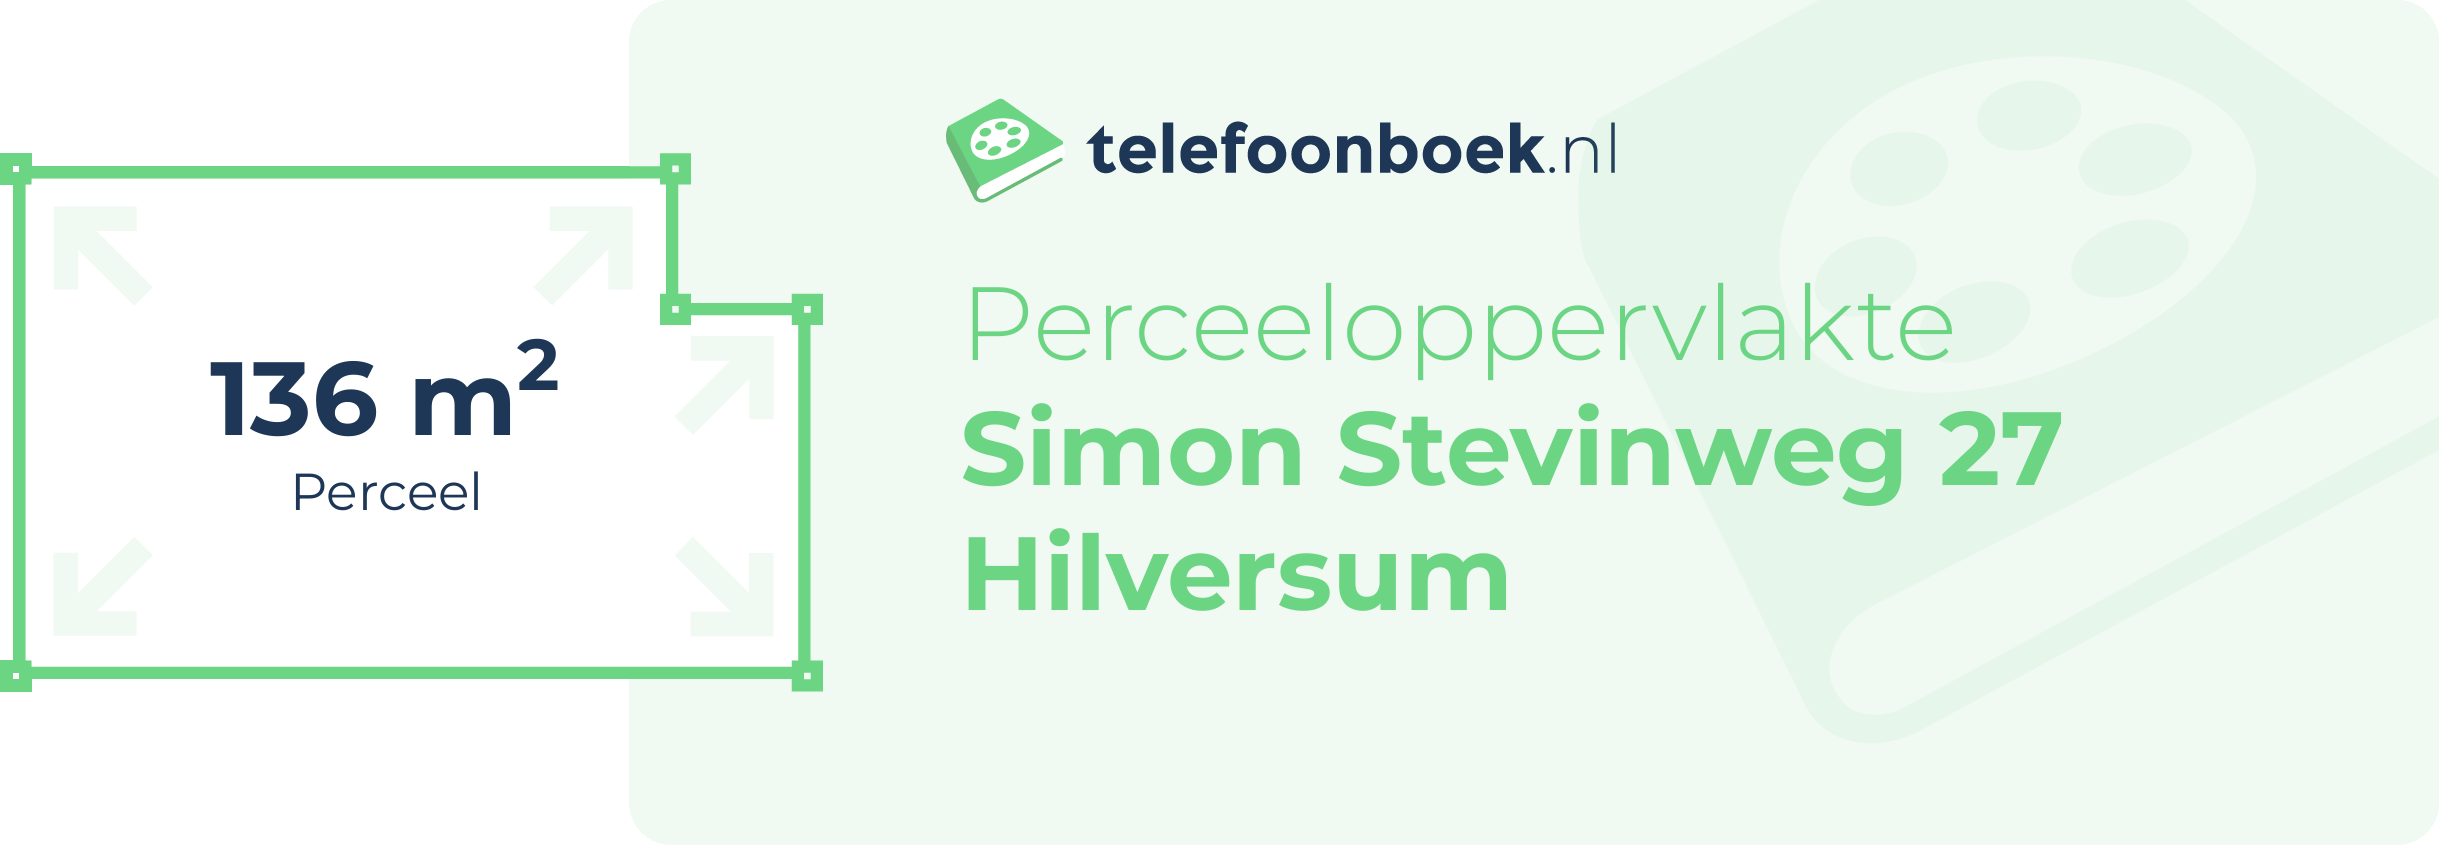 Perceeloppervlakte Simon Stevinweg 27 Hilversum